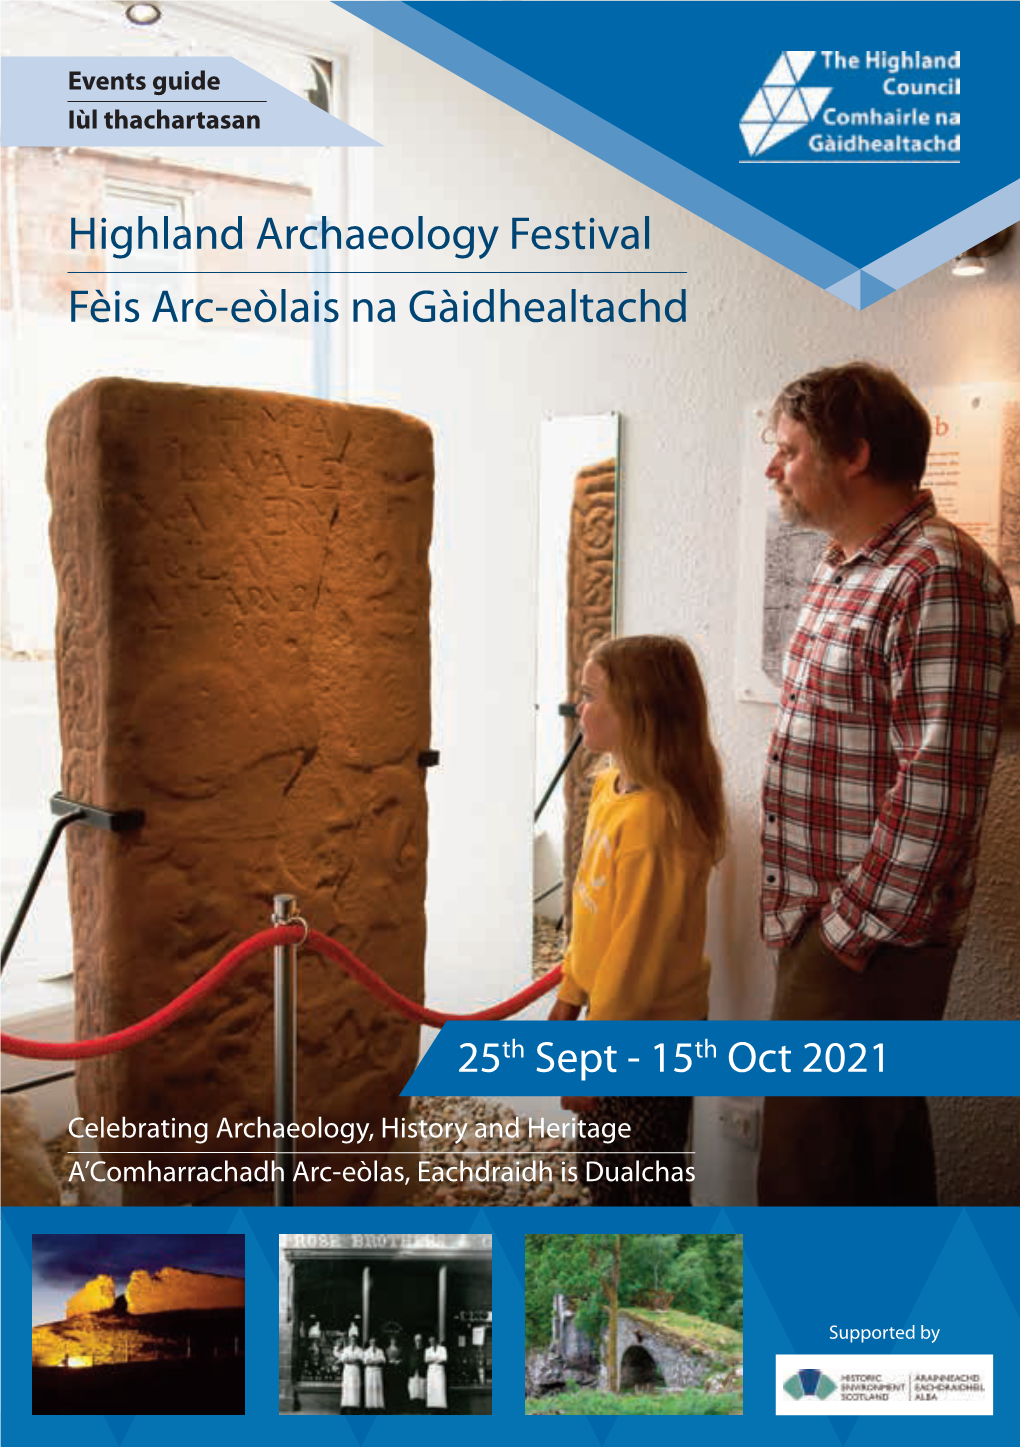 Highland Archaeology Festival Fèis Arc-Eòlais Na Gàidhealtachd